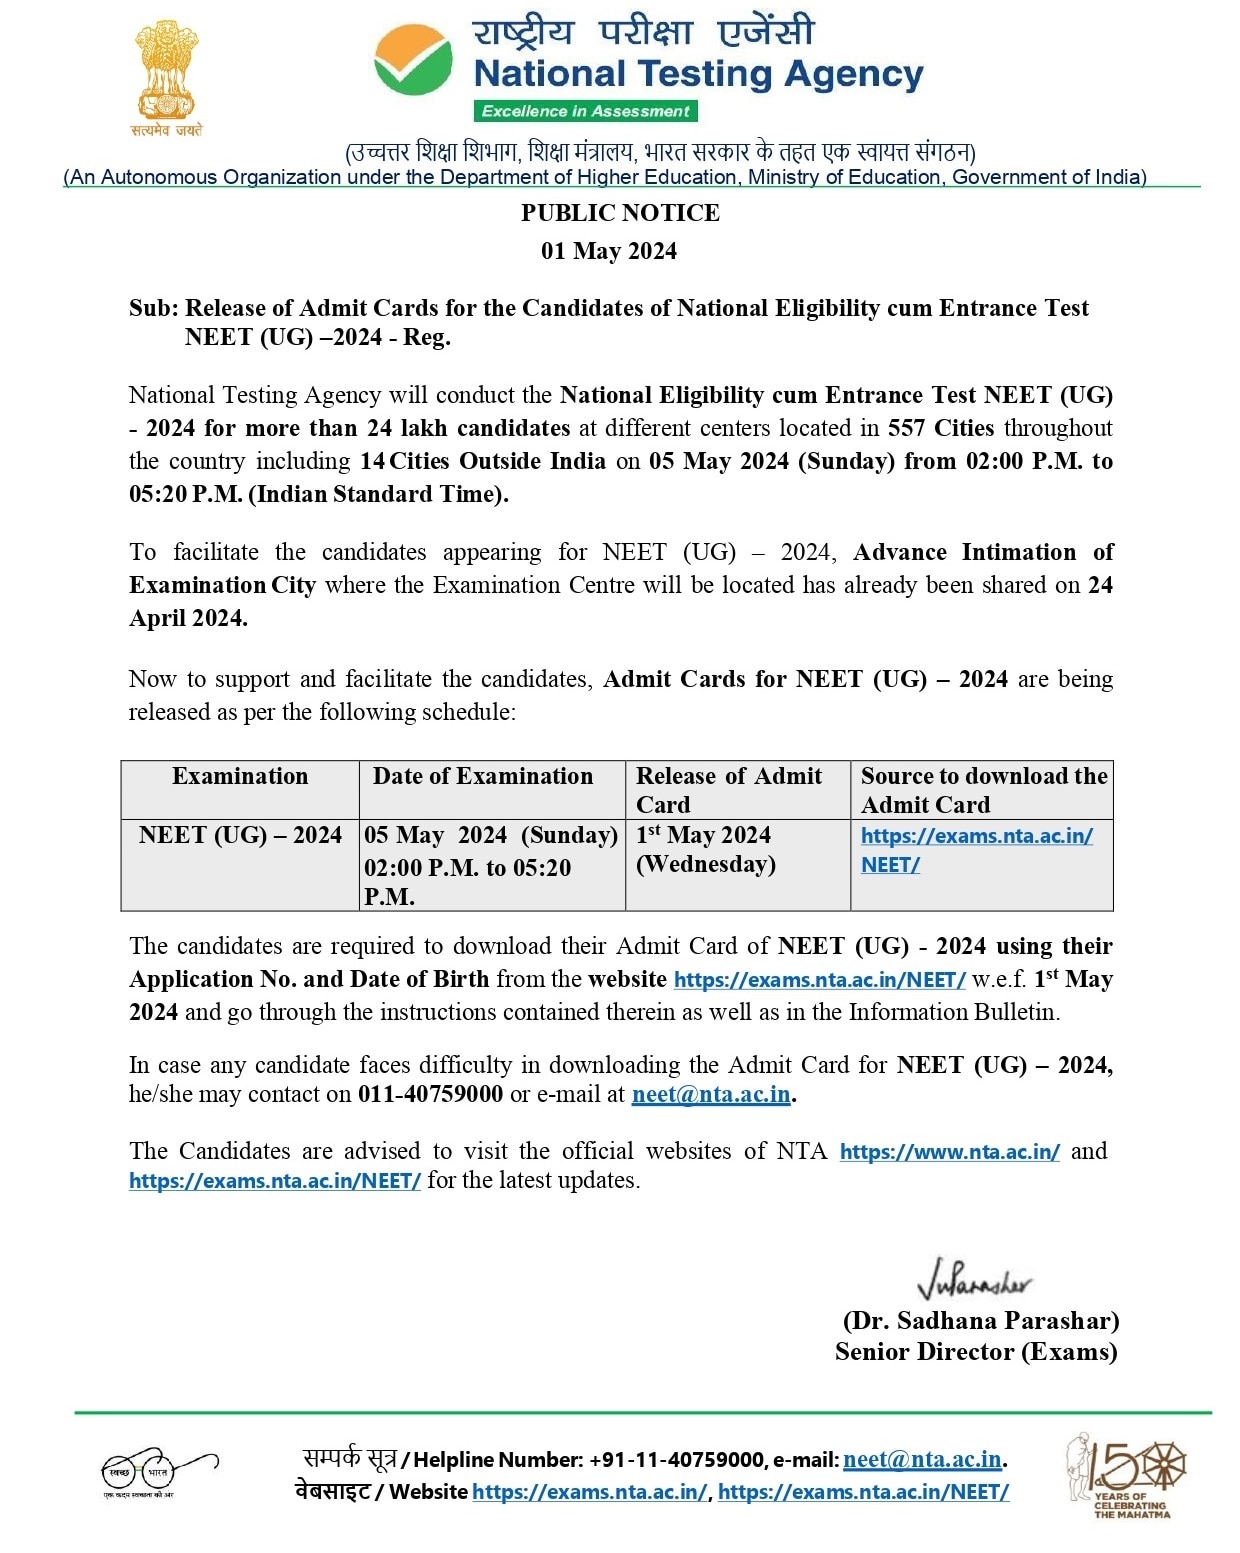 NEET UG Admit Card: నీట్ యూజీ - 2024 అడ్మిట్ కార్డులు విడుదల, పరీక్ష ఎప్పుడంటే?